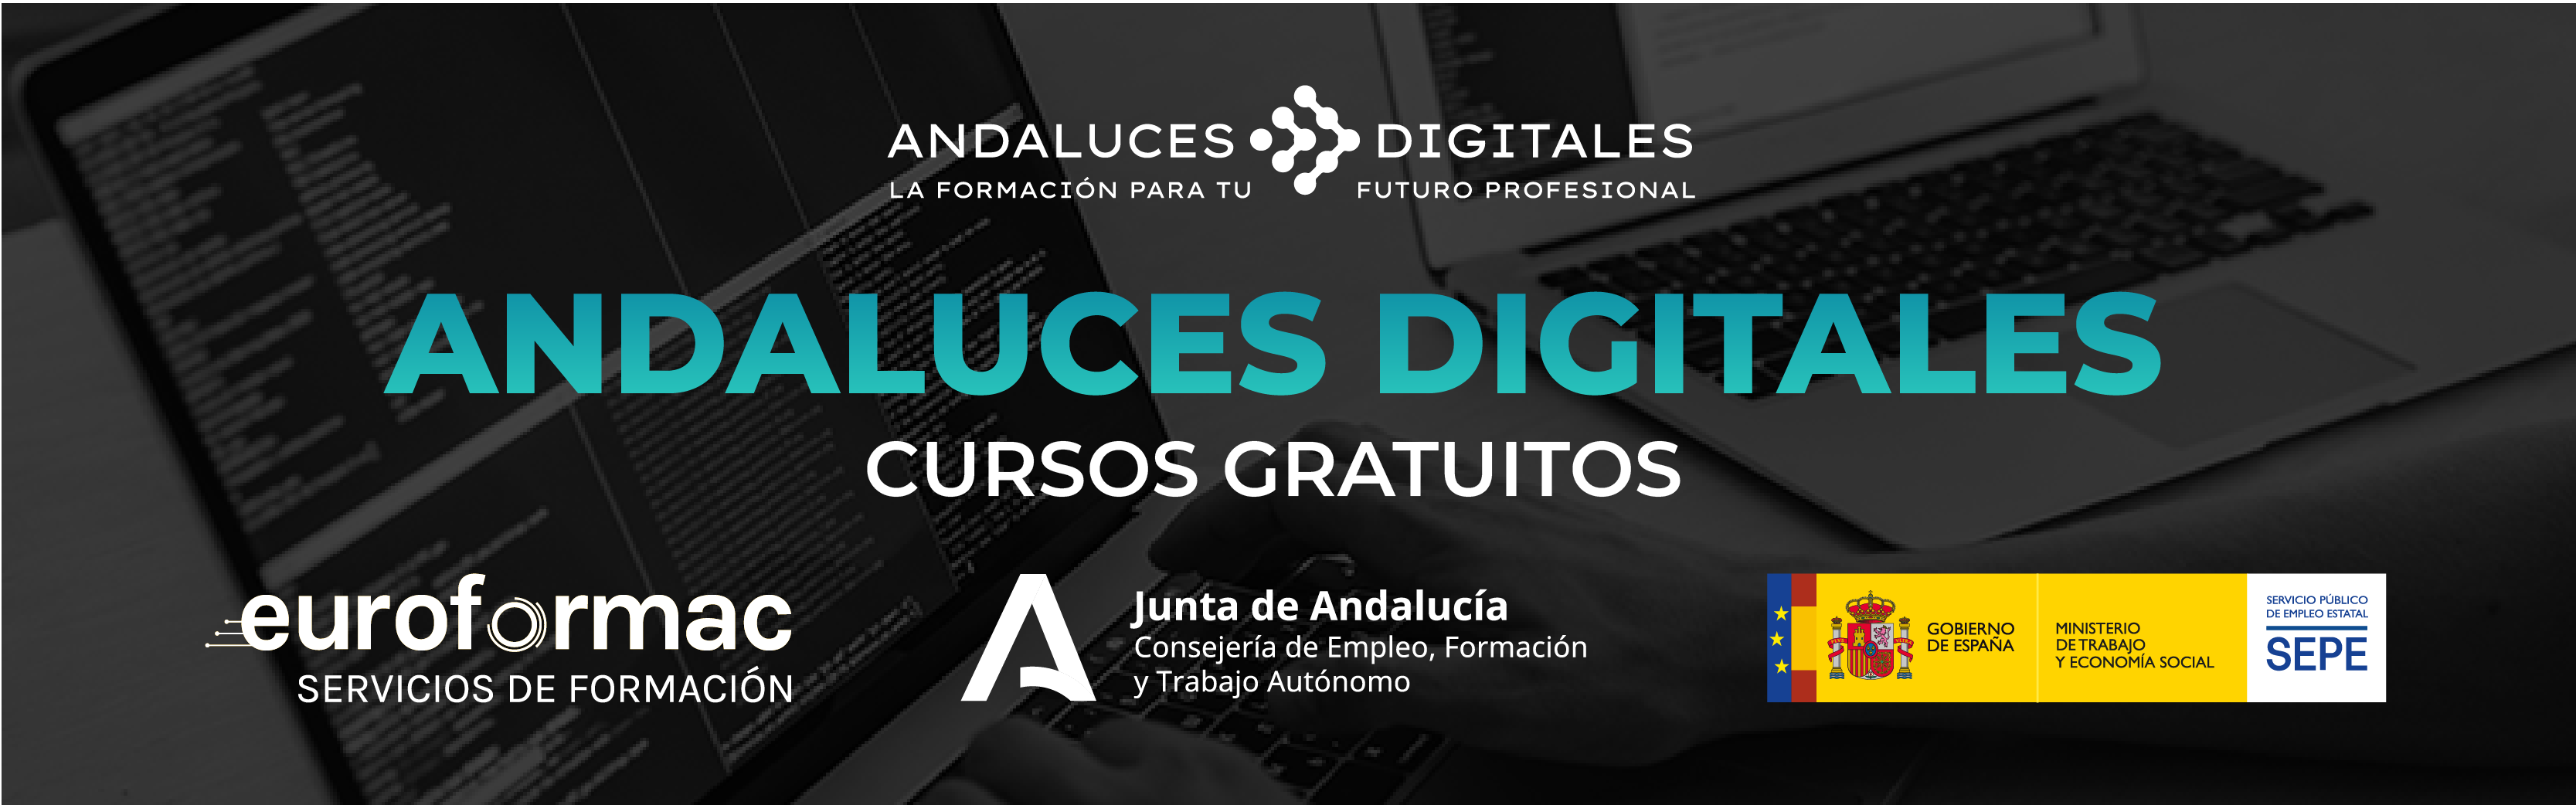 Cursos gratuitos Andaluces Digitales Marmolejo